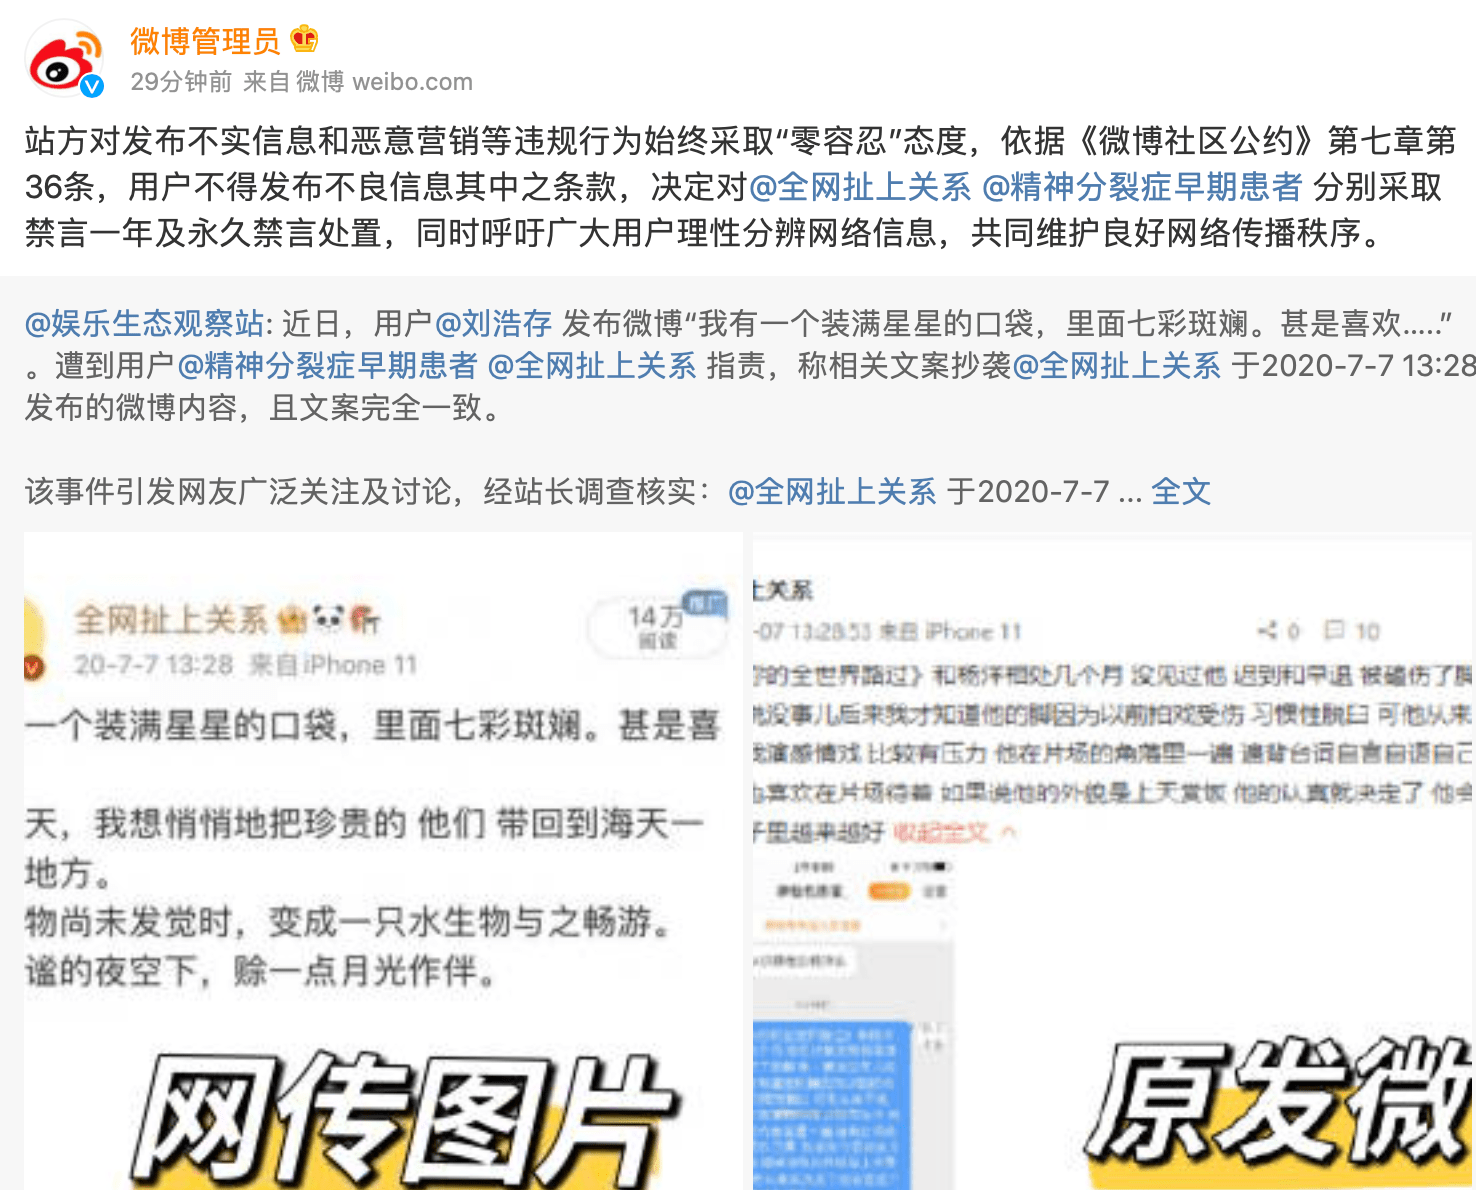 有故意P图嫌疑 微博站方对造谣刘浩存抄袭用户采取禁言处置